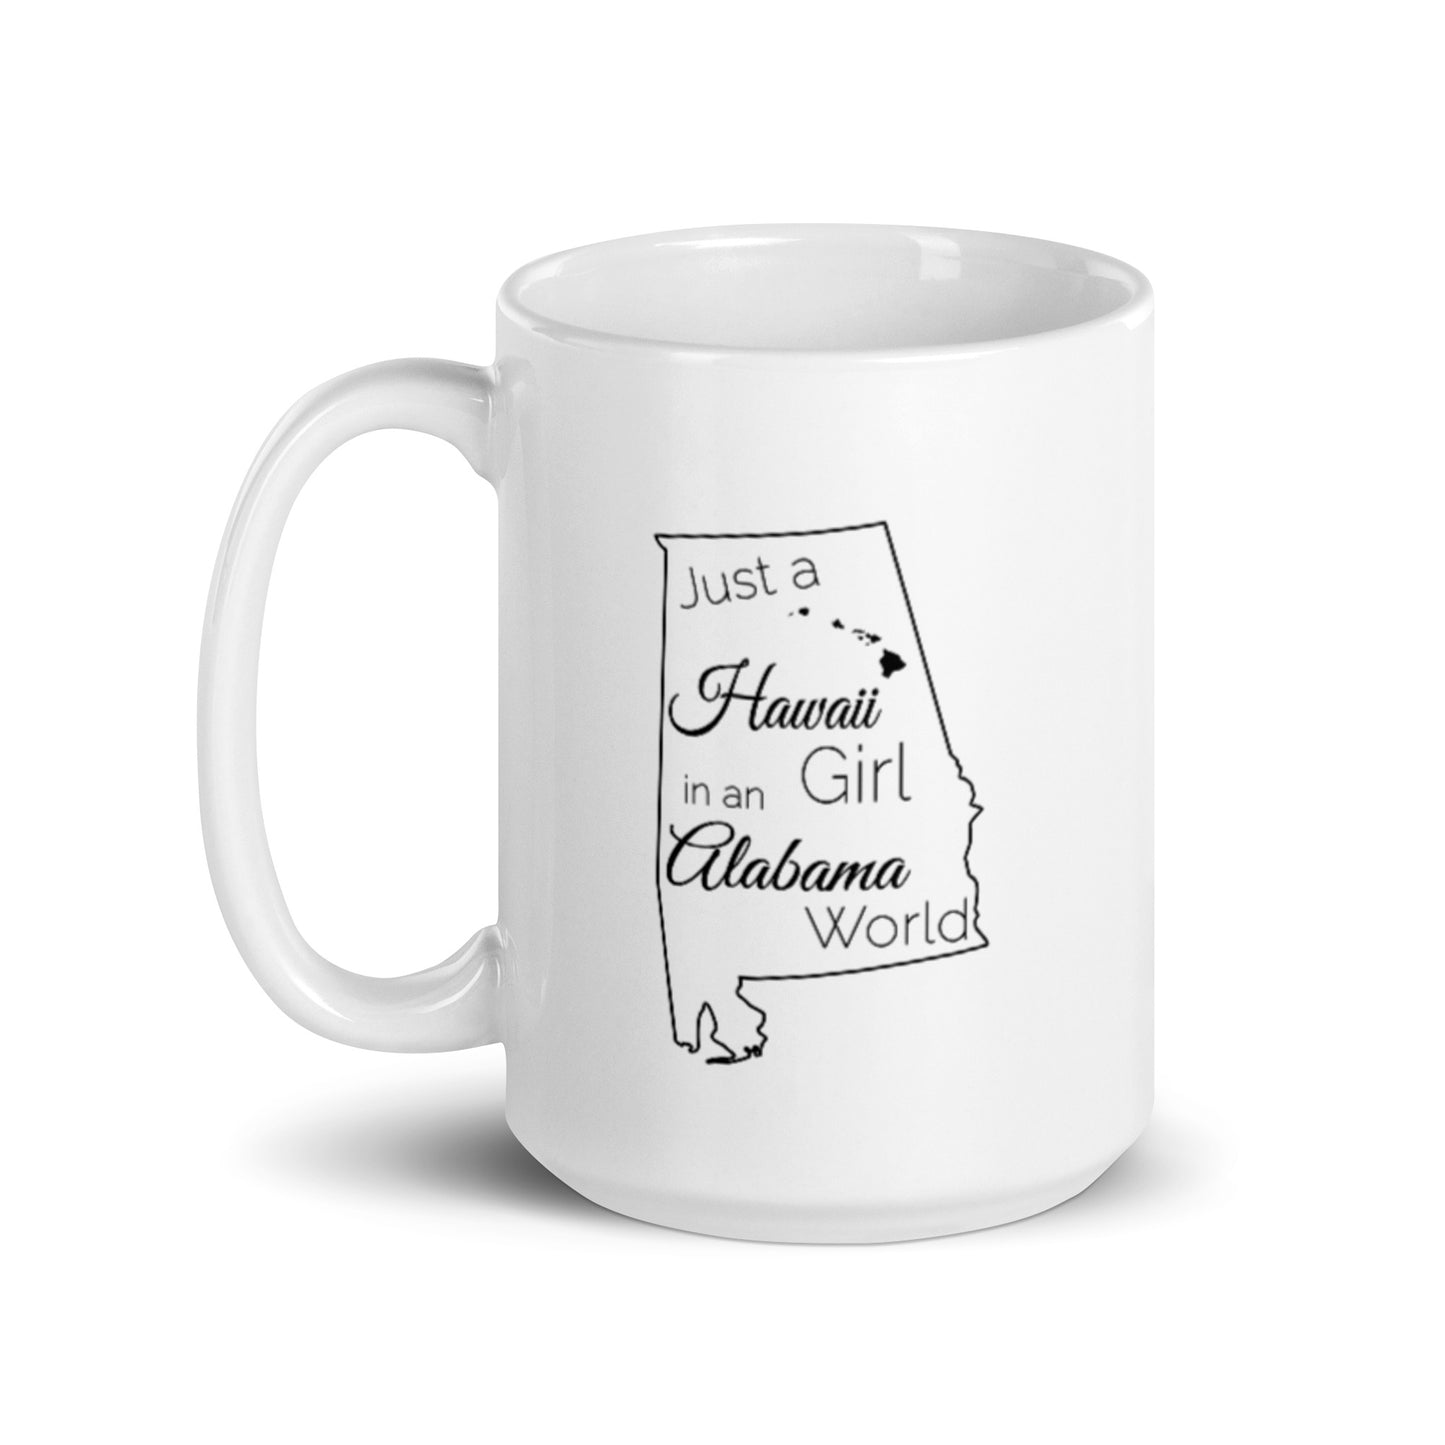 Just a Hawaii Girl in an Alabama World White glossy mug